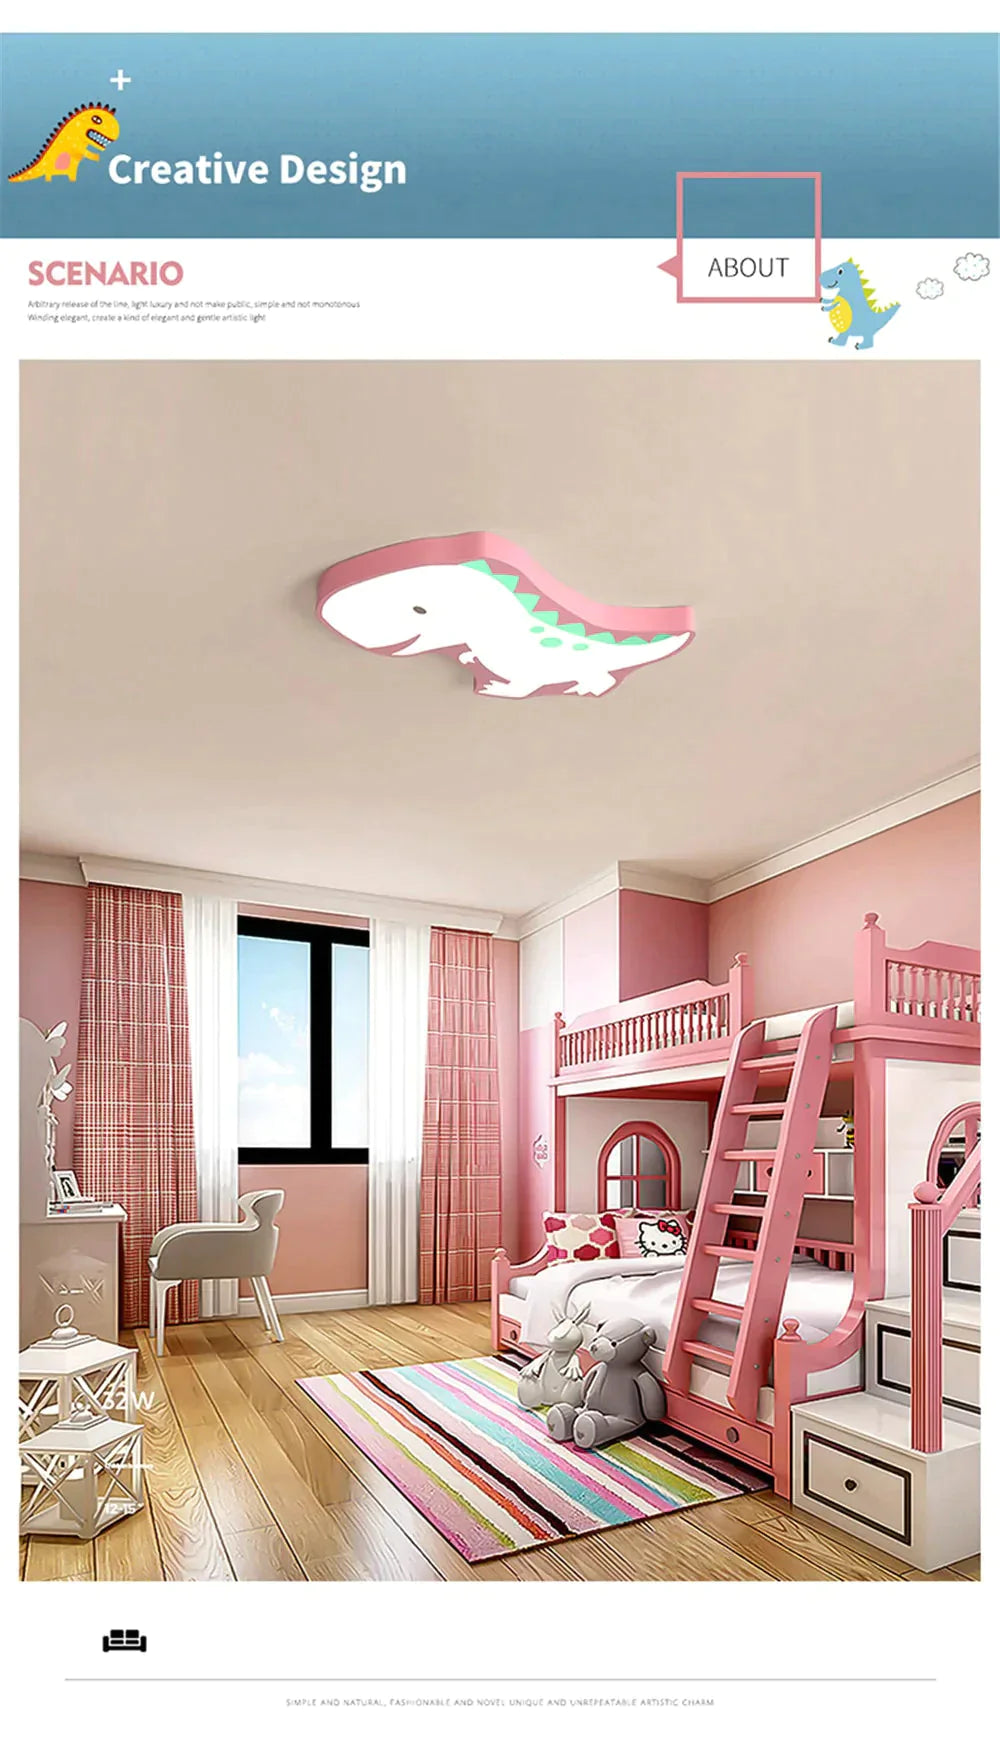 Novelty Dinosaur Led Ceiling Lights Iron Modern Lovely Children Baby Kids Bedroom Light Fixtures